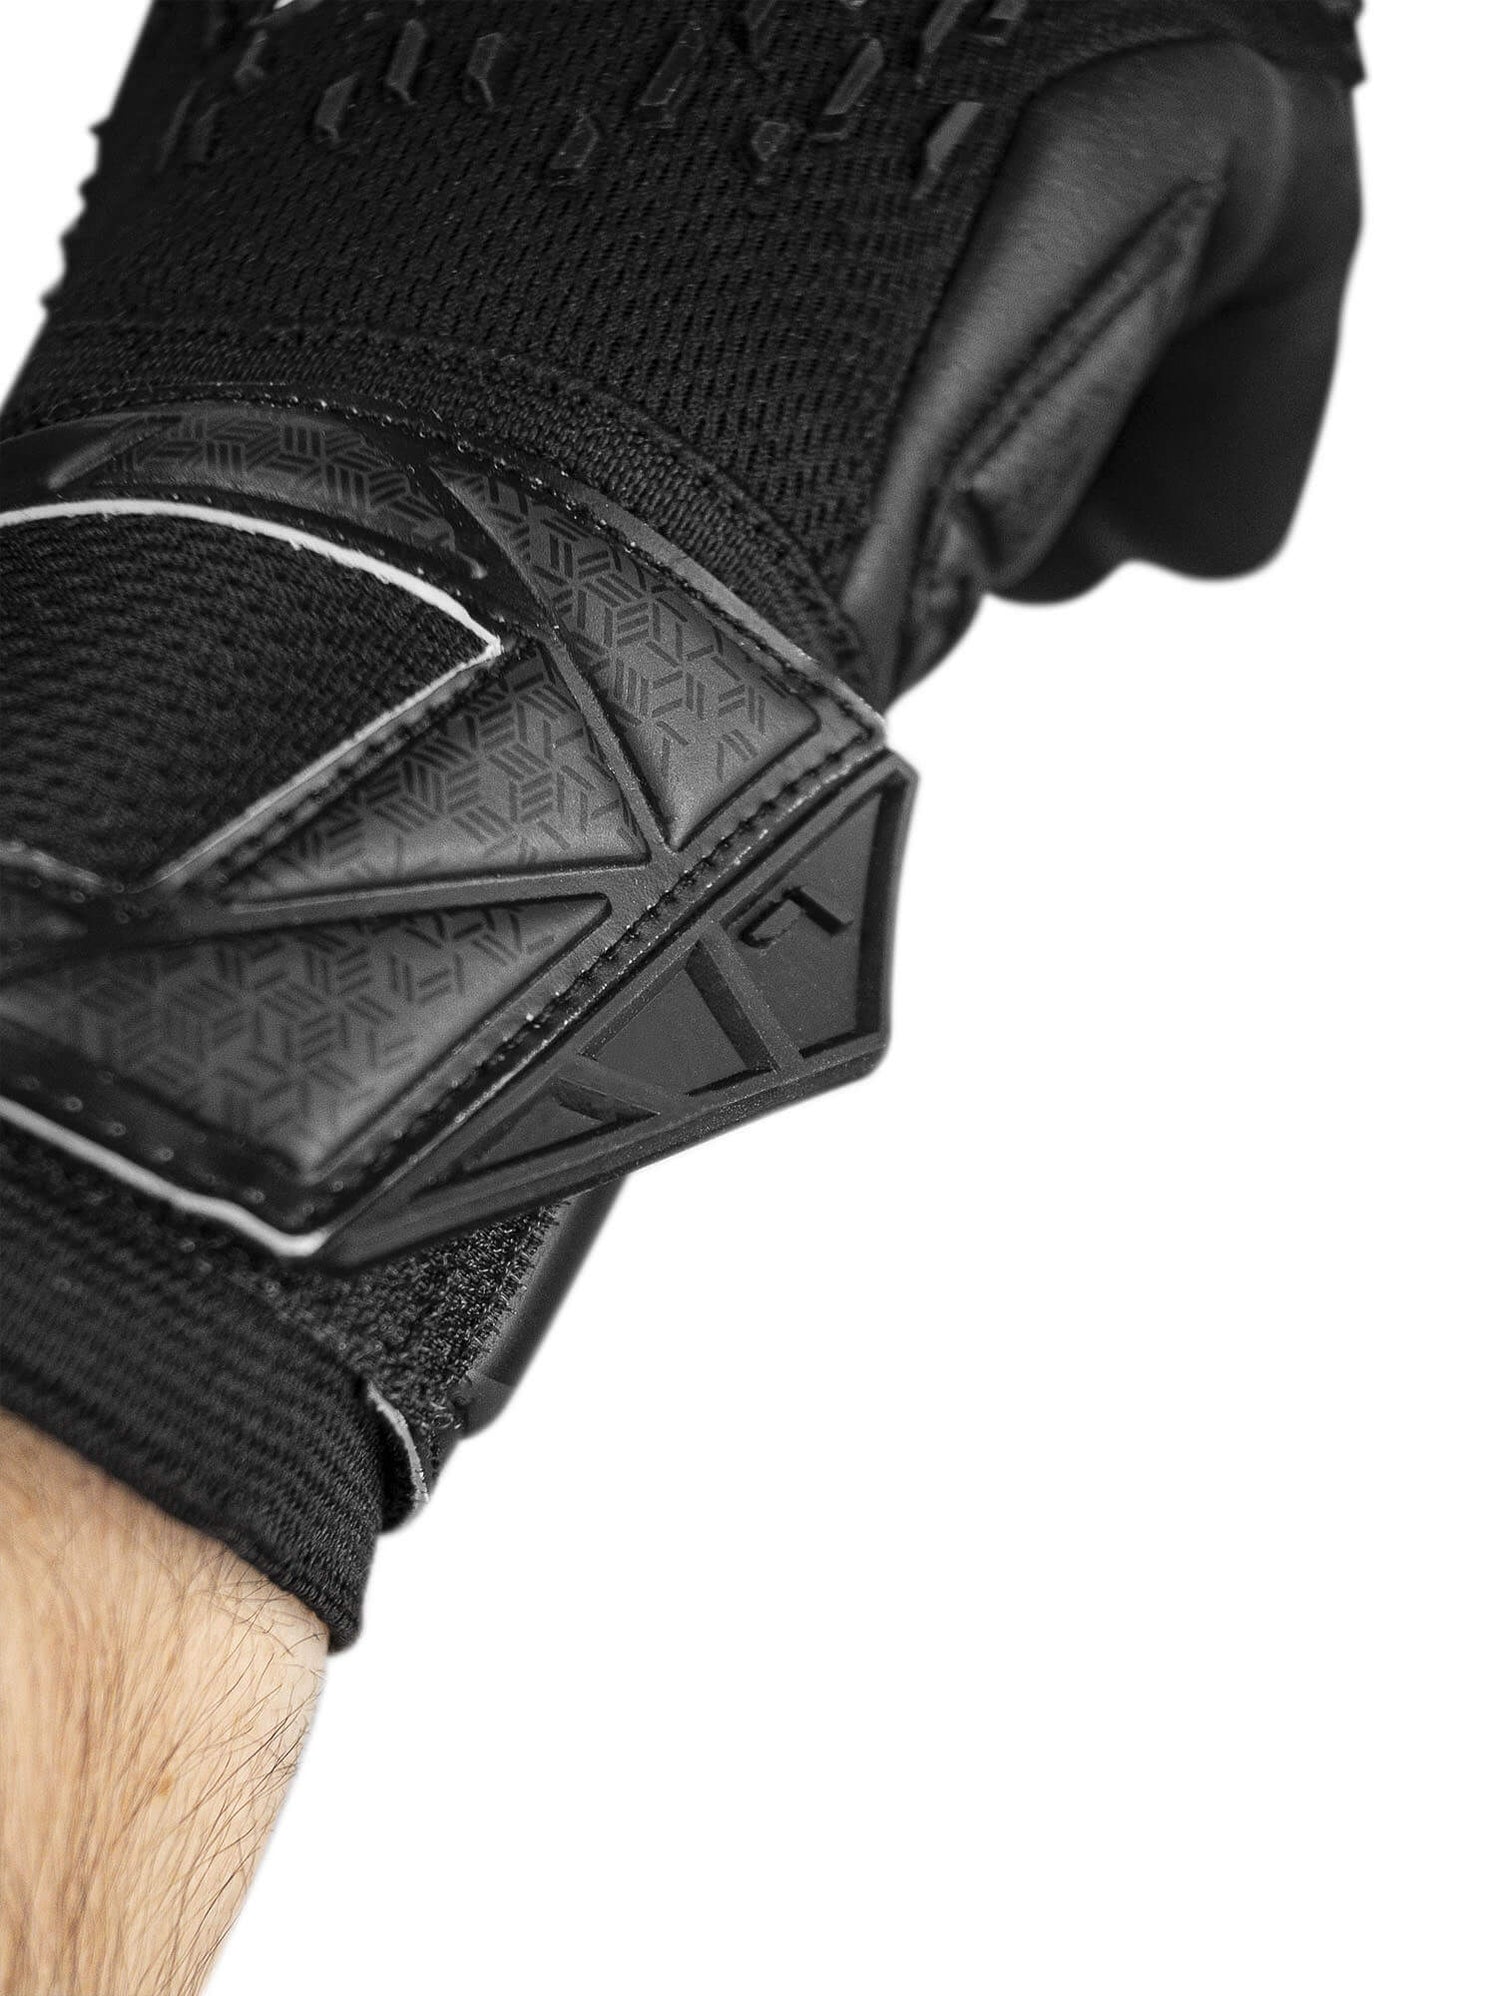 Reusch Attrakt Freegel Infinity FS Goalkeeper Gloves (Detail 3)